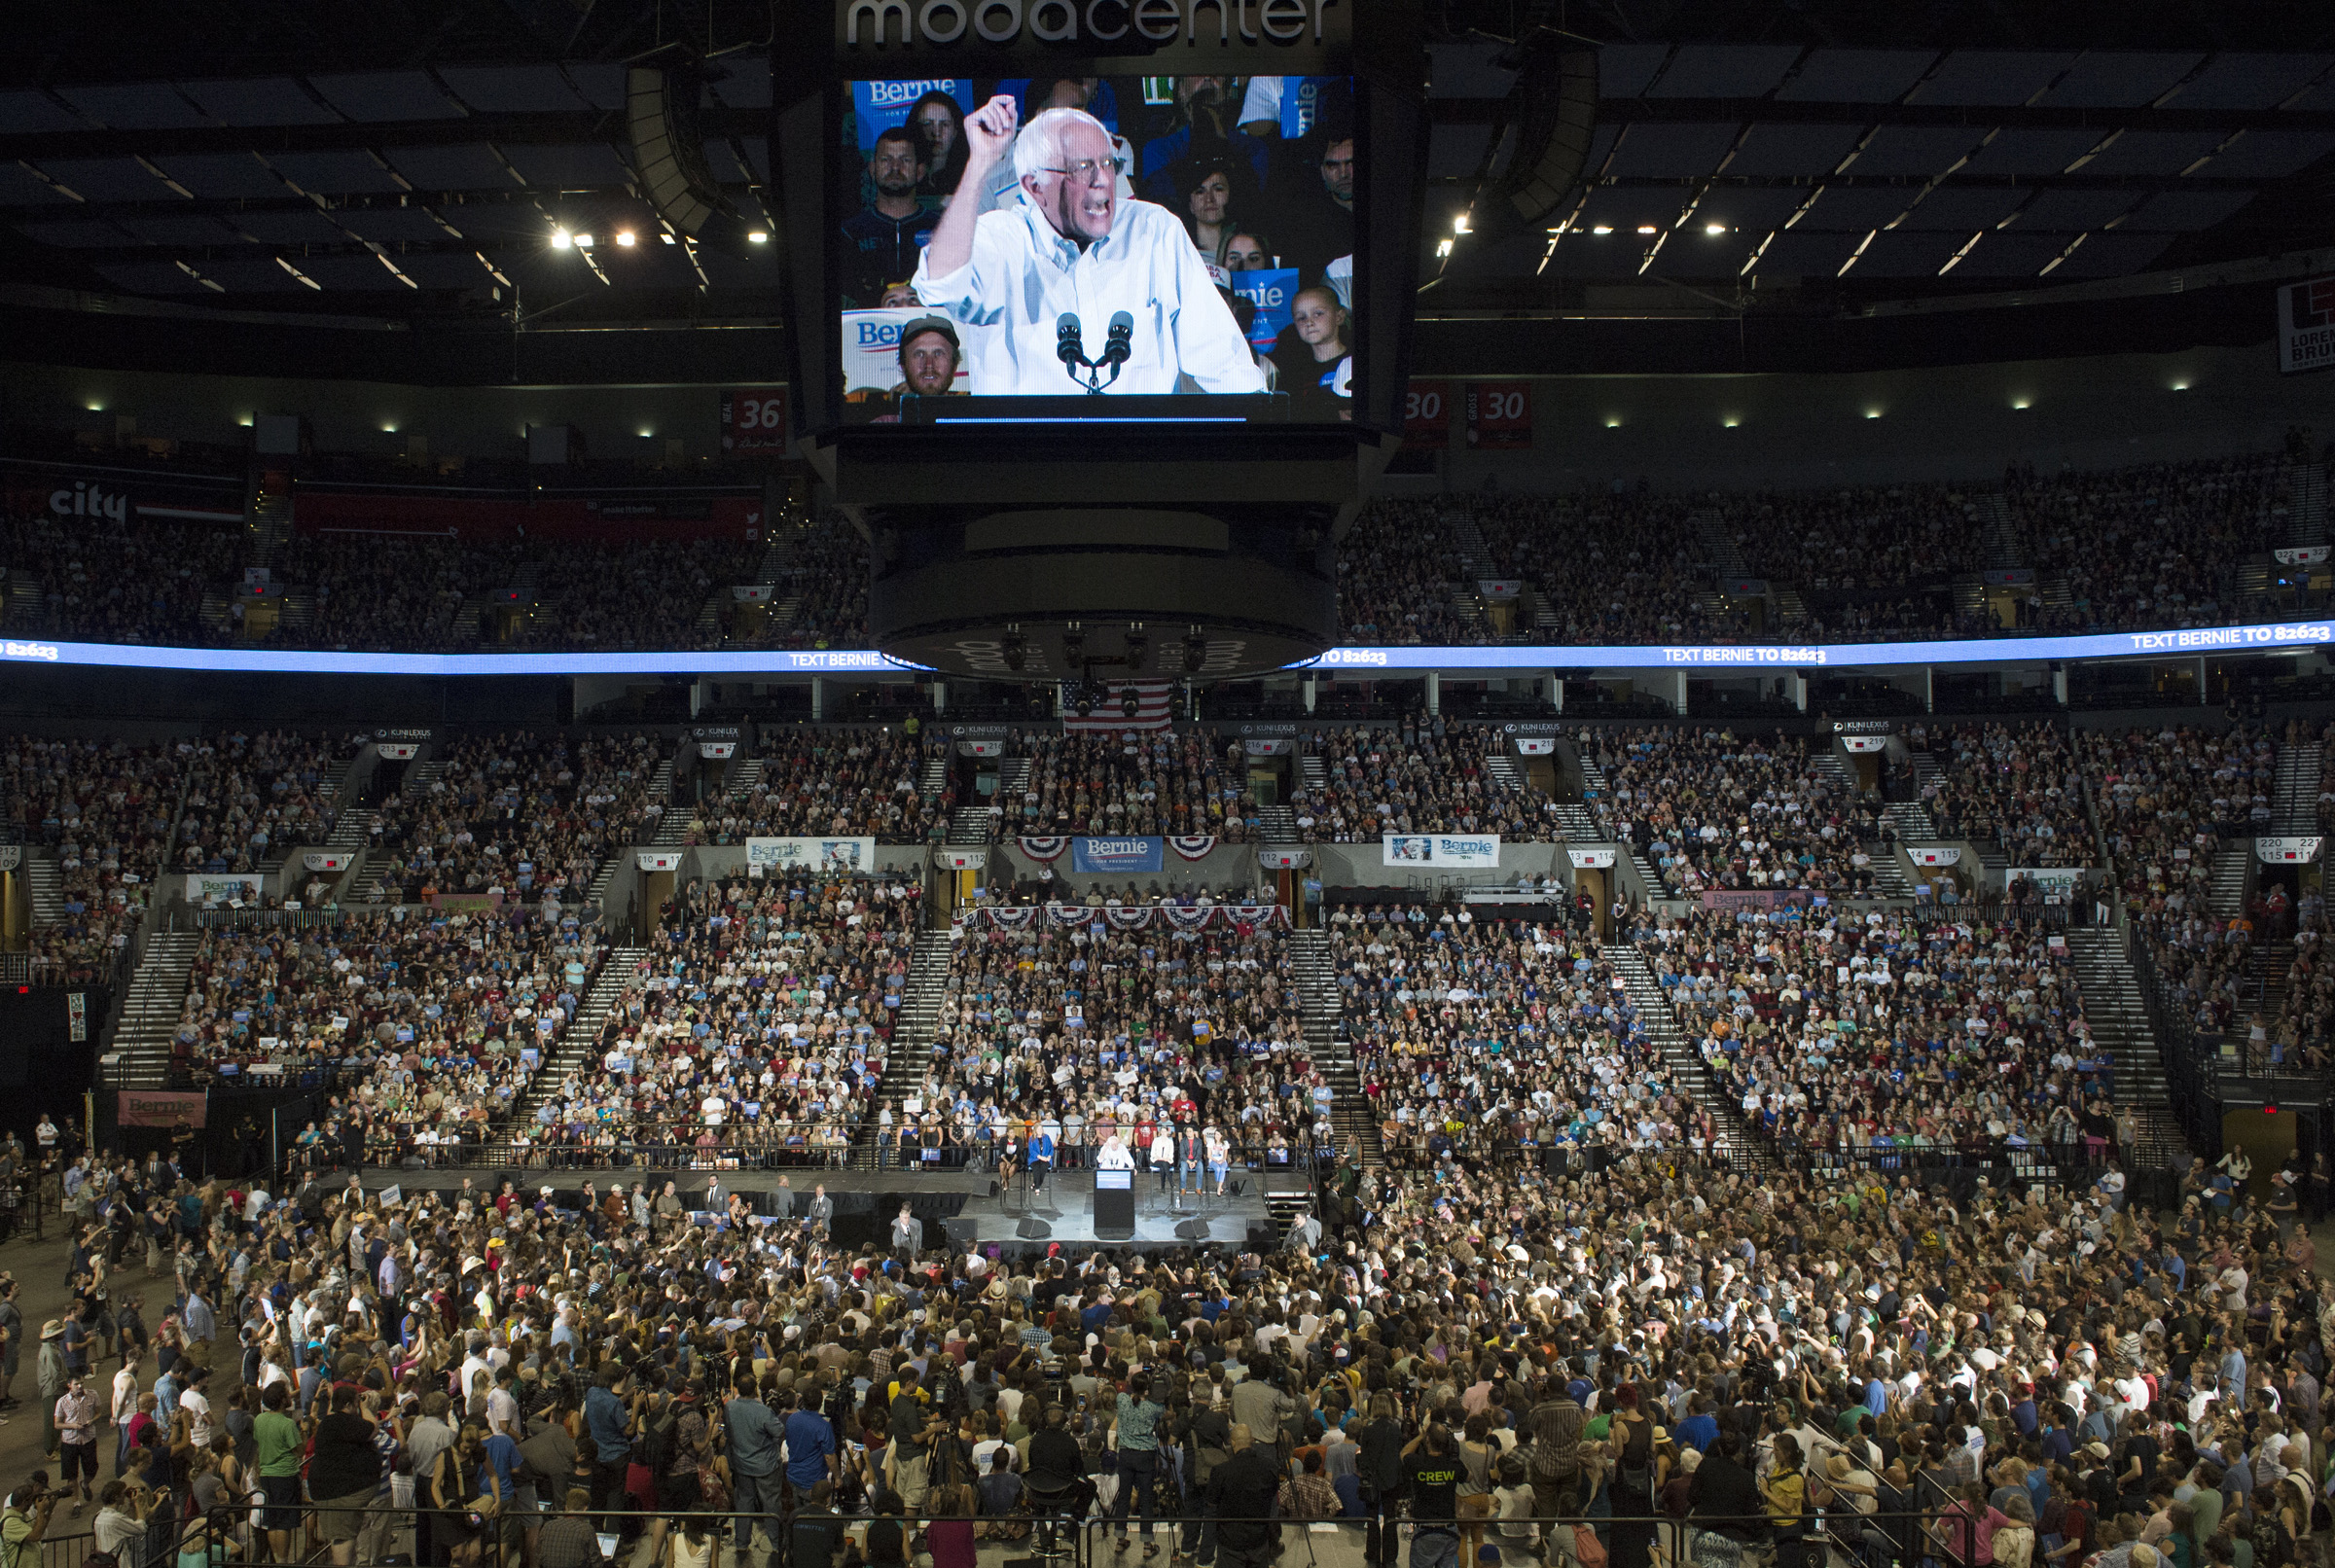 Bernie Sanders draws 28,000 in Portland rally - CBS News2400 x 1612